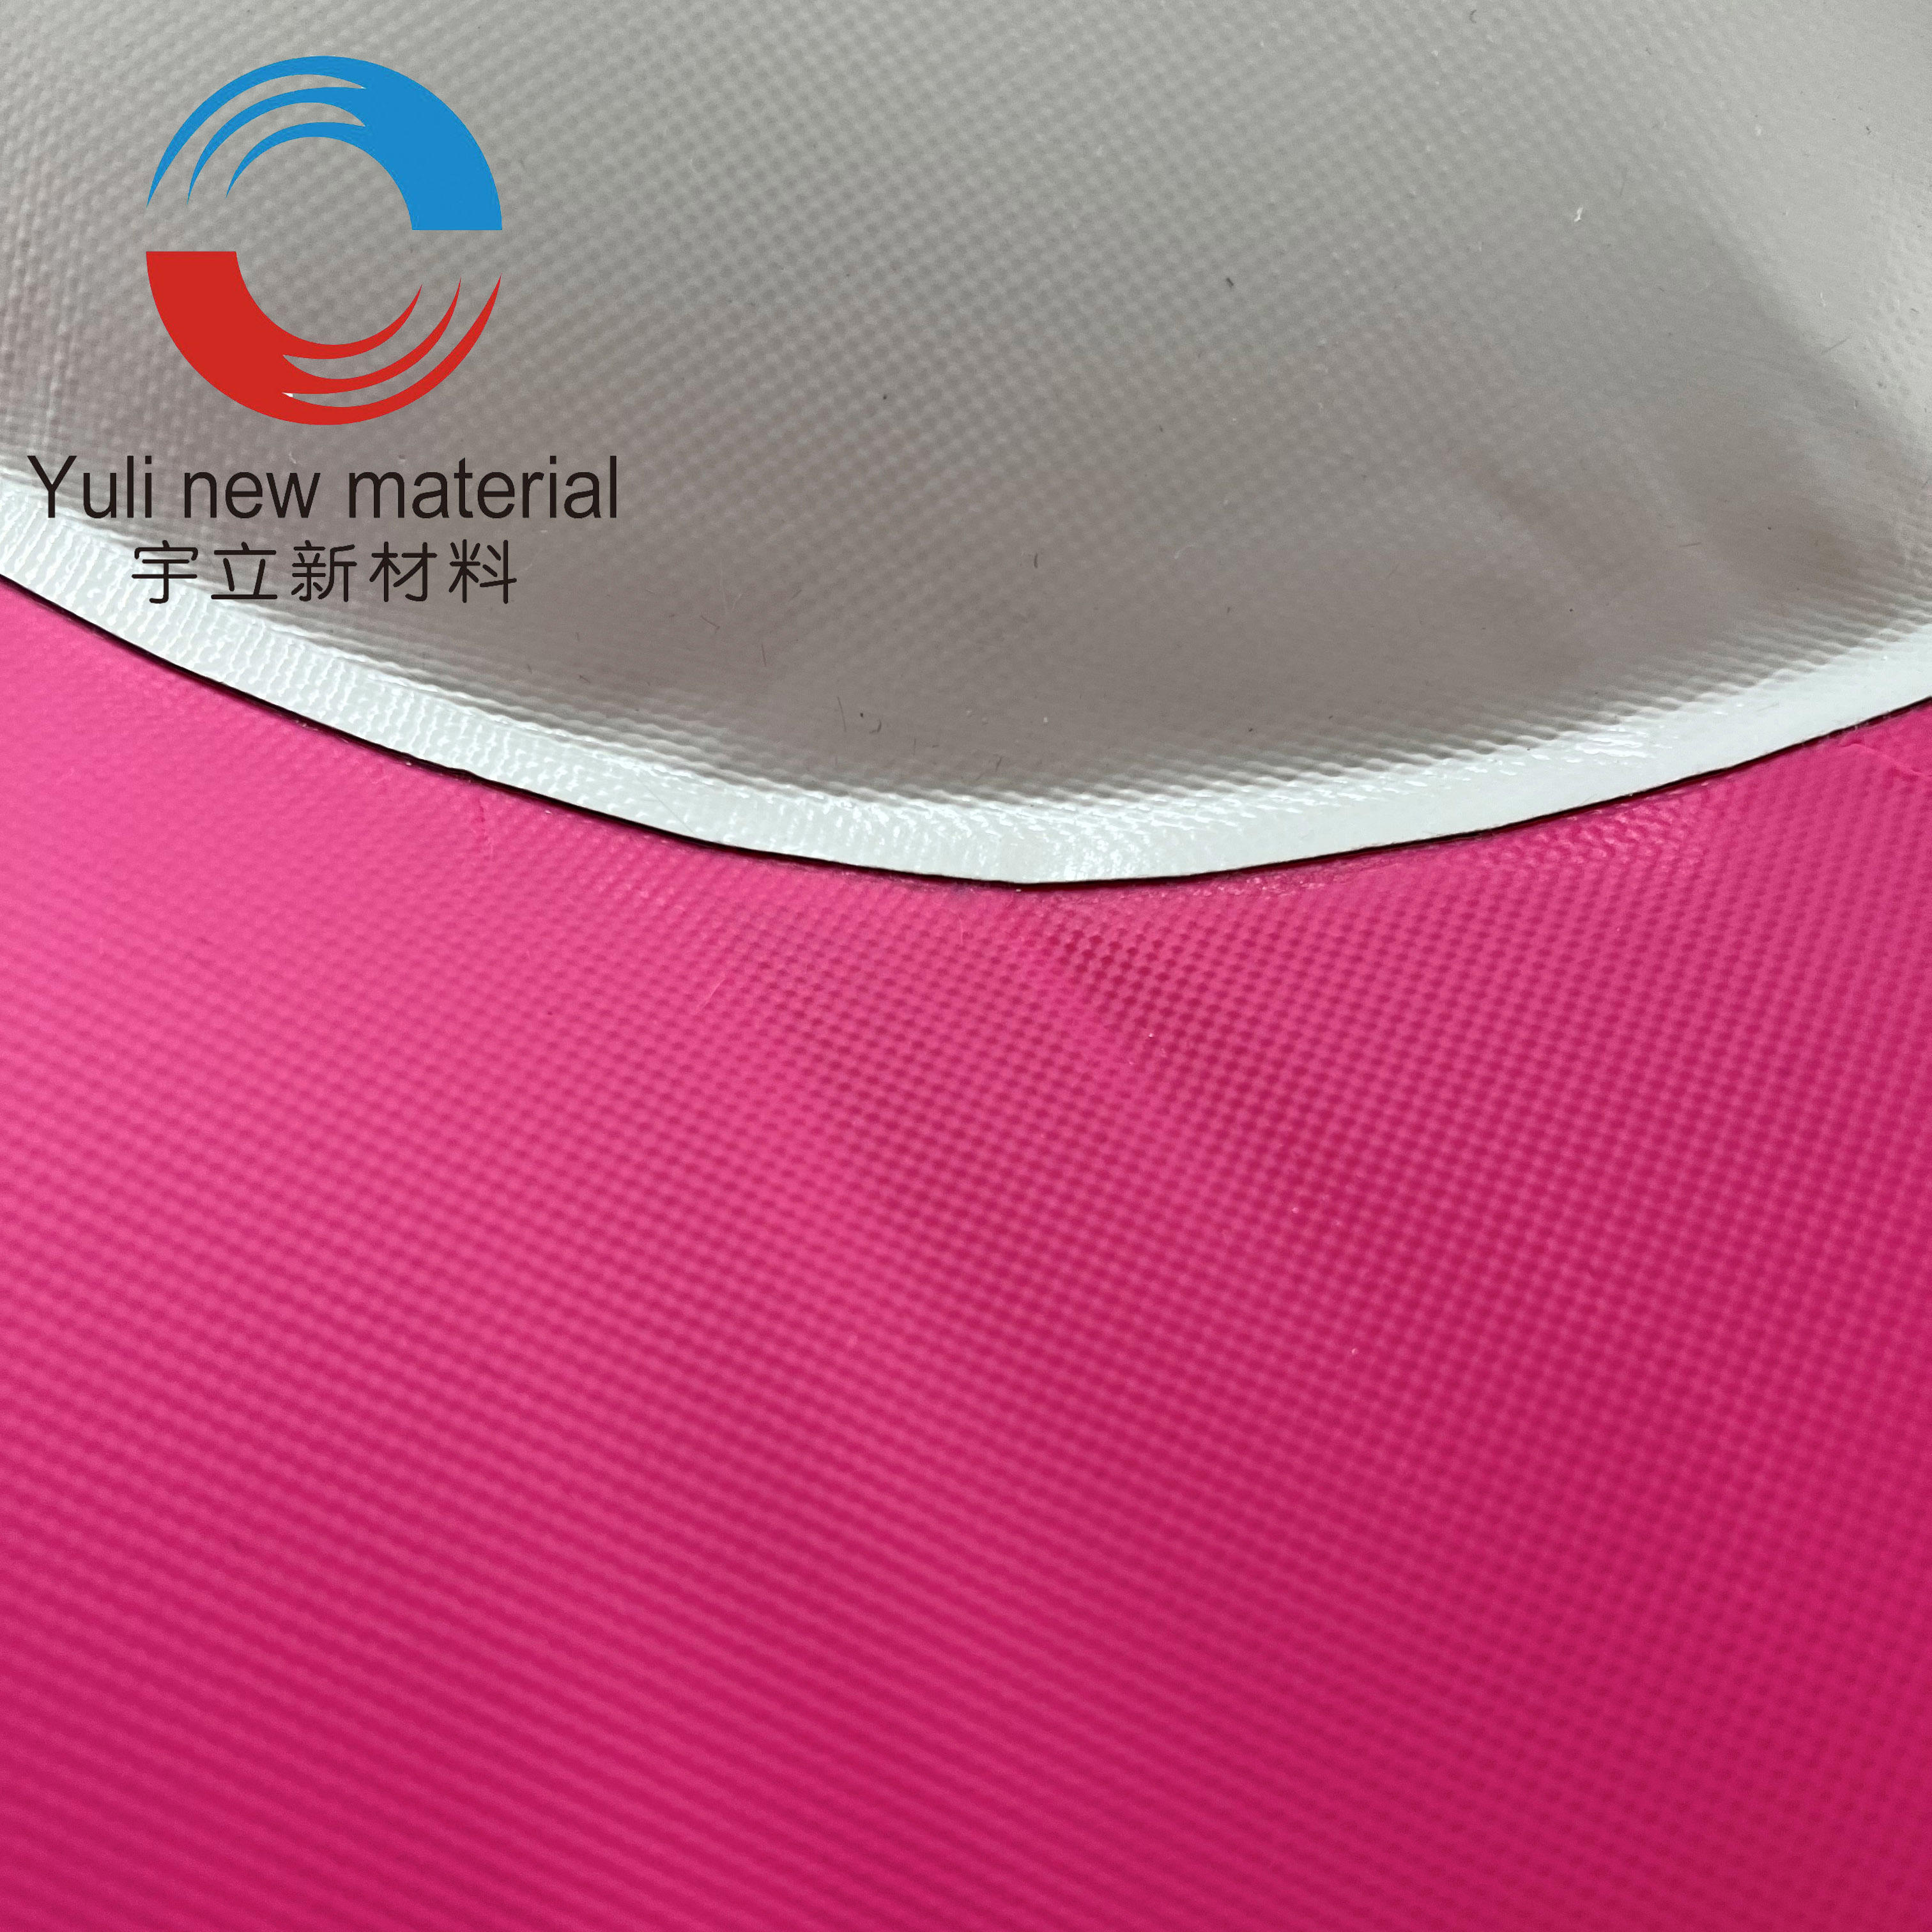 Juguetes inflables del juego del agua de la lona del PVC de la natación